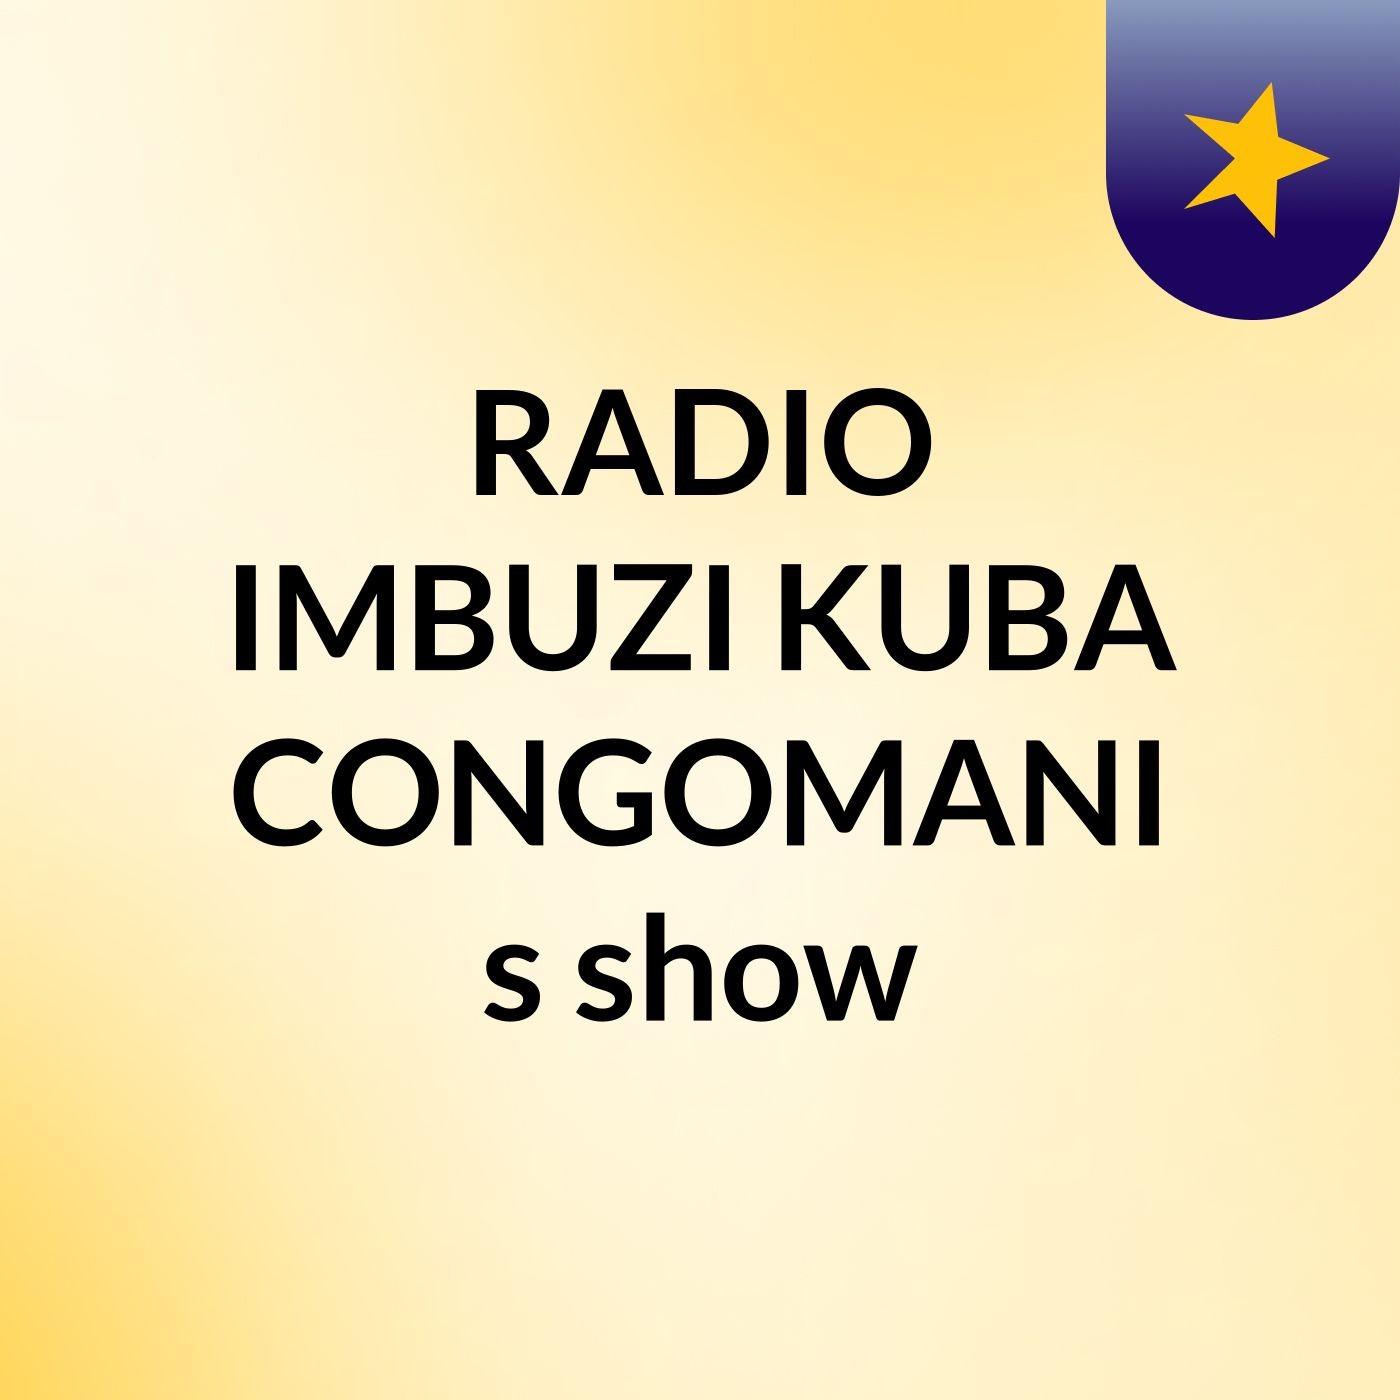 RADIO IMBUZI KUBA CONGOMANI's show